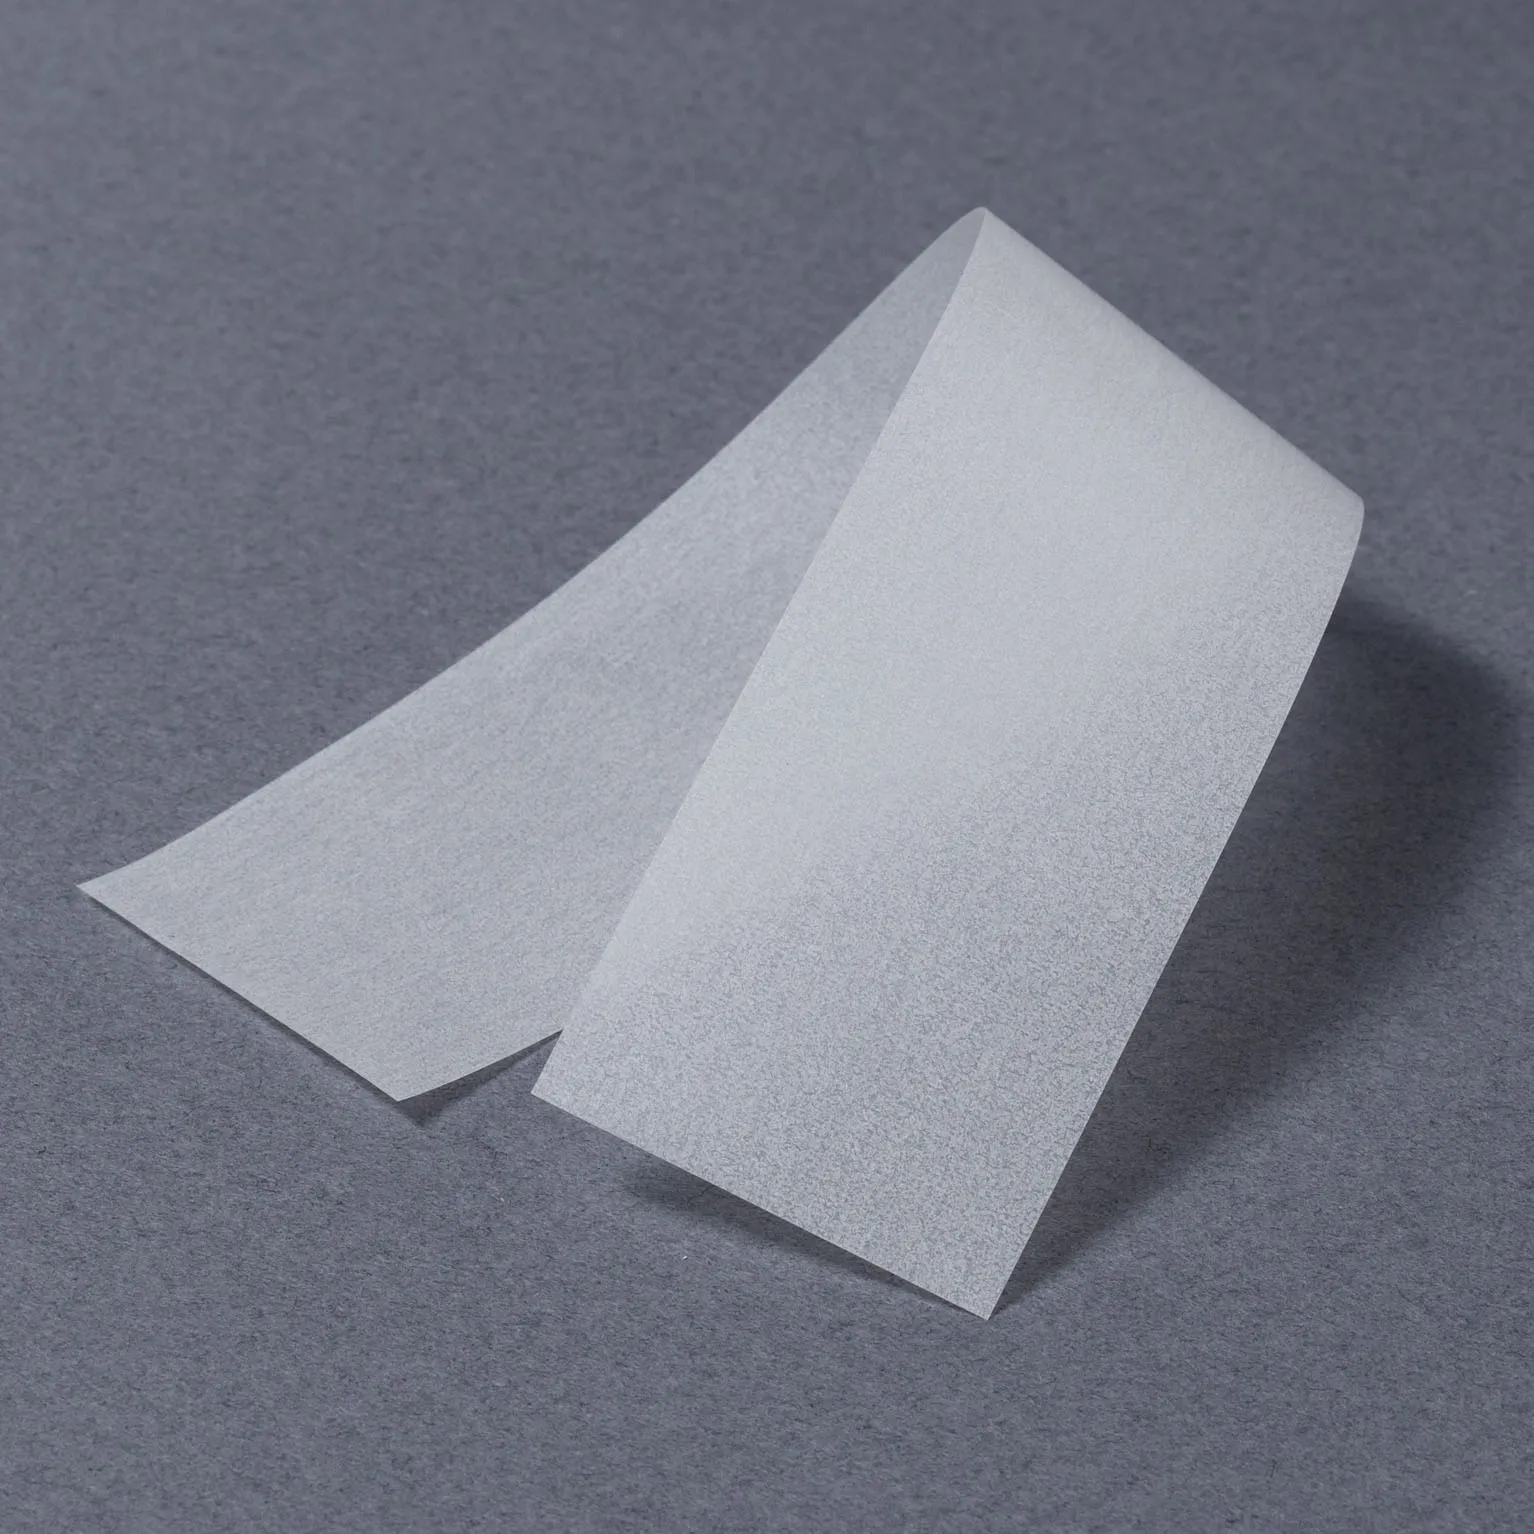 SP-35 スフレセパレーター35巾 (35×190) 1,000